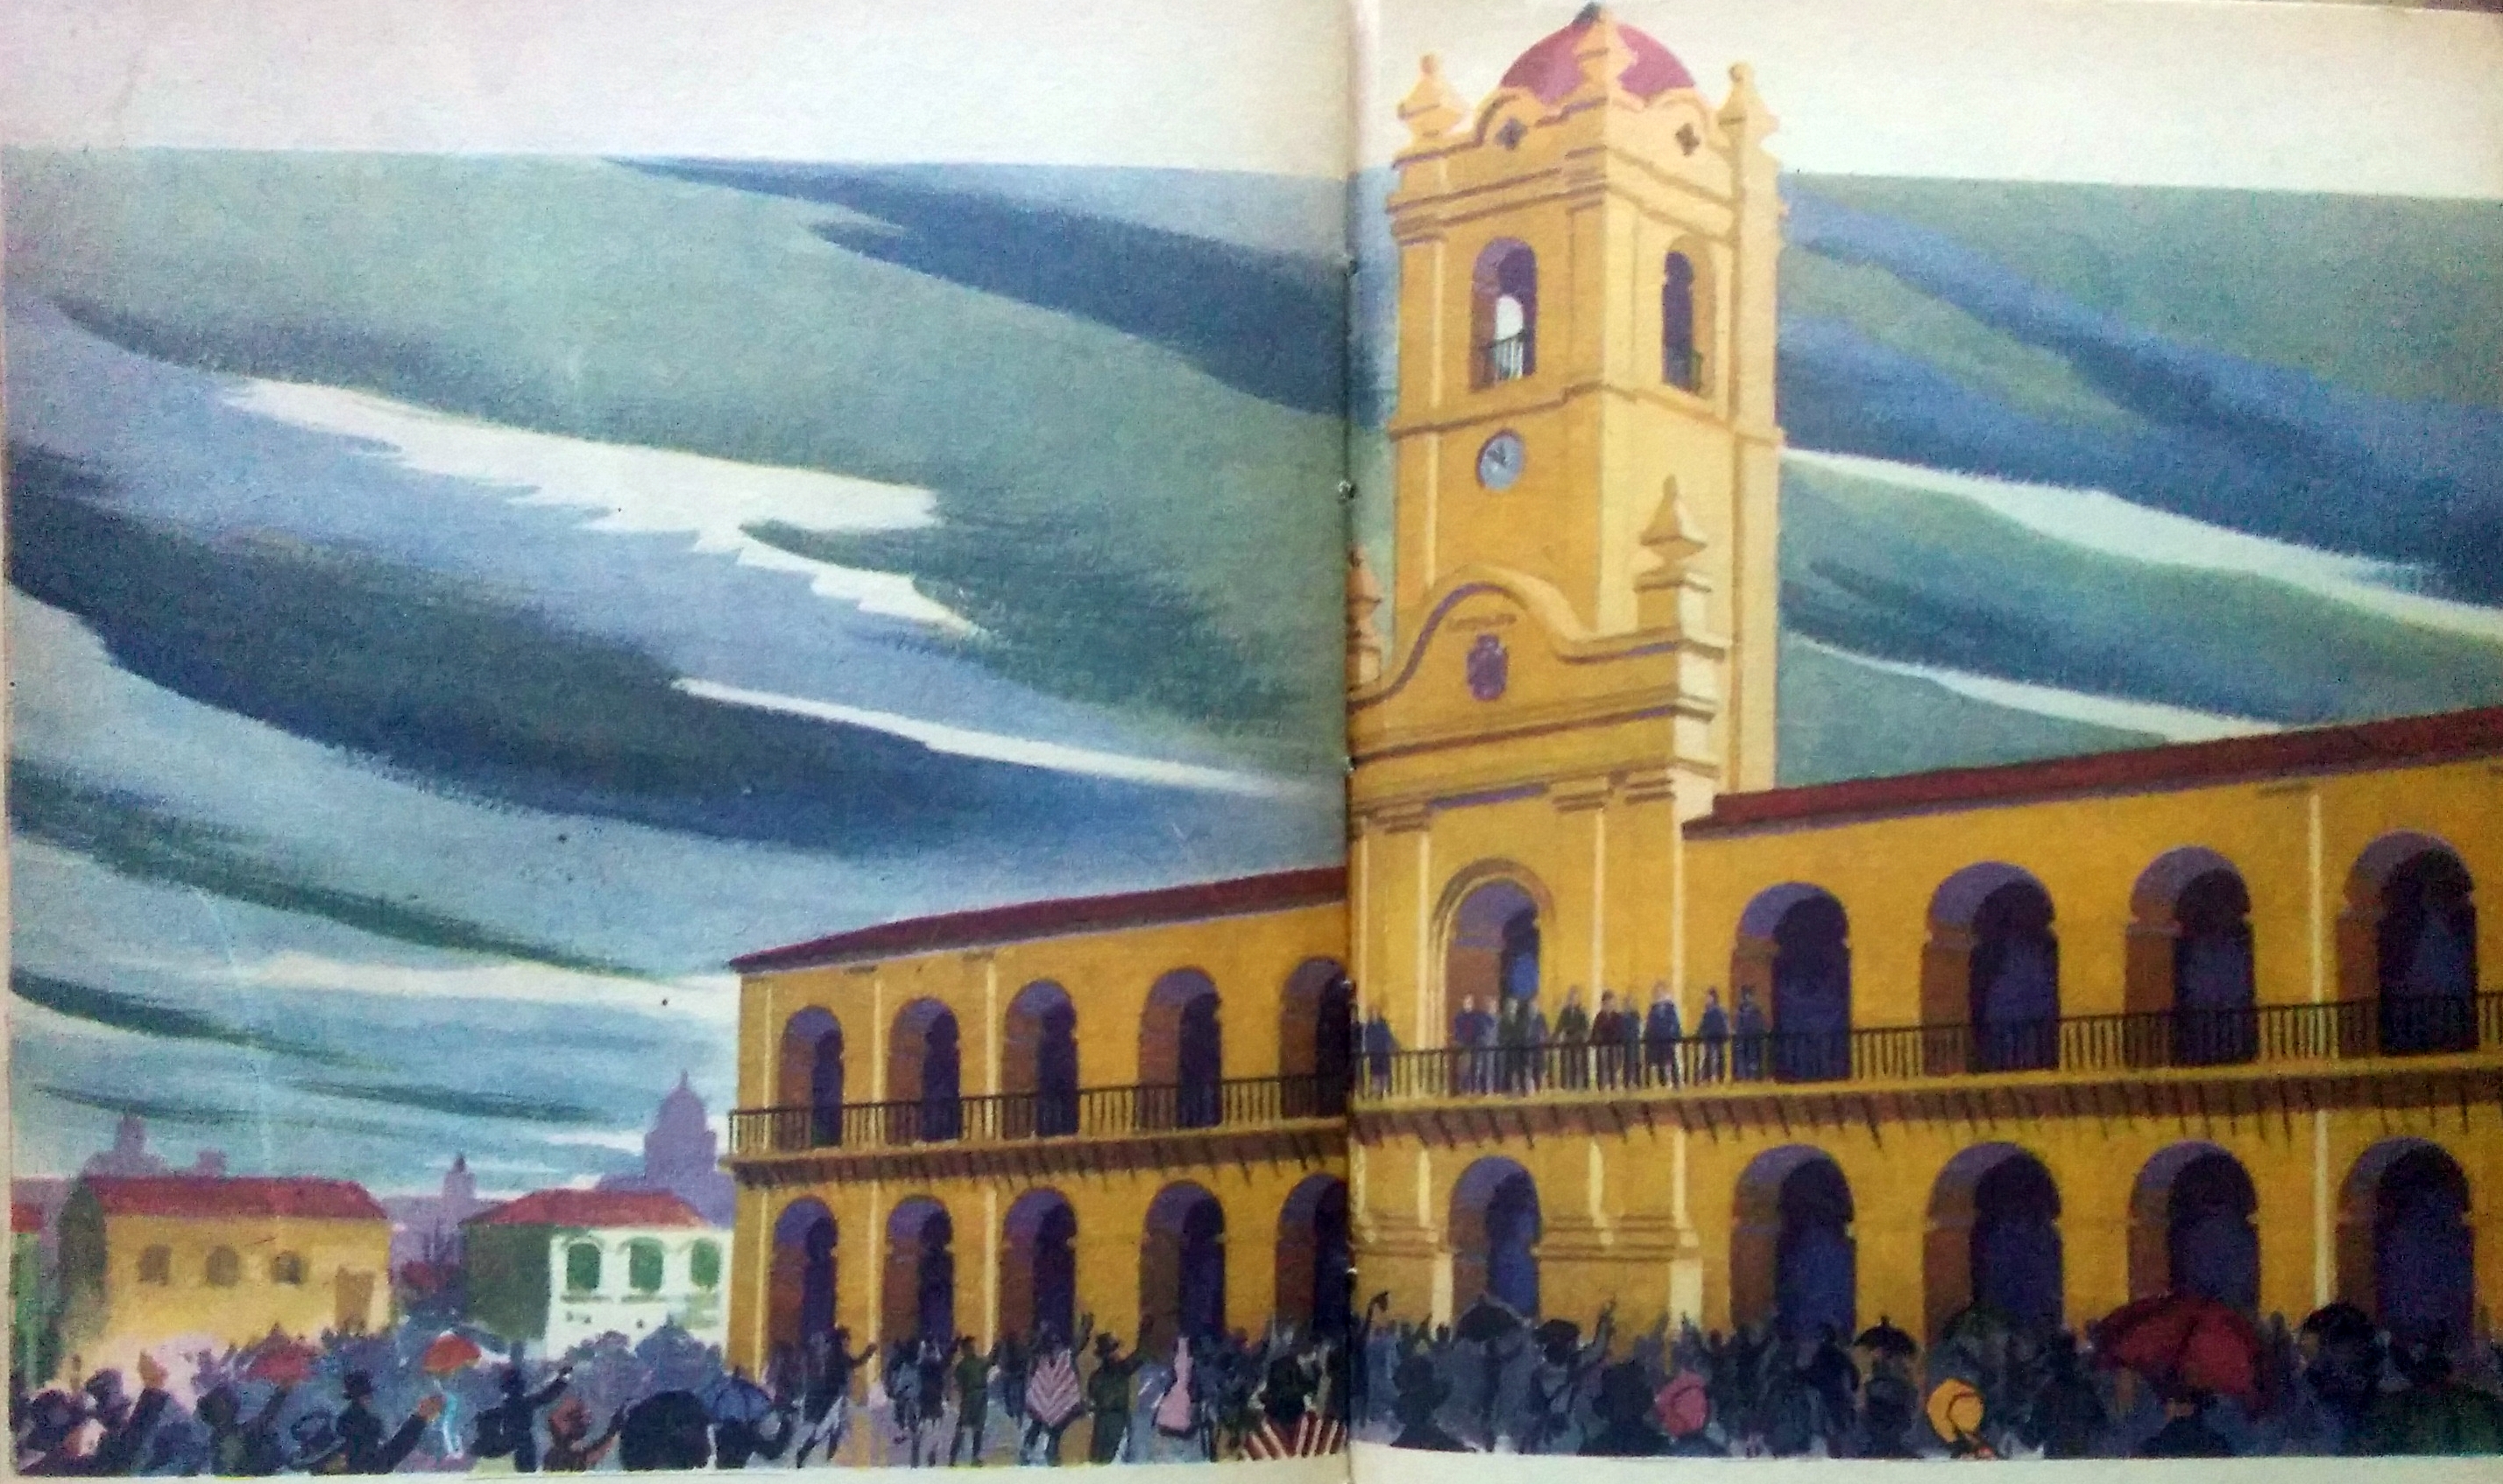 Ilustraciones alusivas al 25 de Mayo de 1810, pertenecientes a distintos libros de lectura, de la enseñanza primaria, de las escuelas argentinas, en las décadas de 1940, 1950 y 1960. 